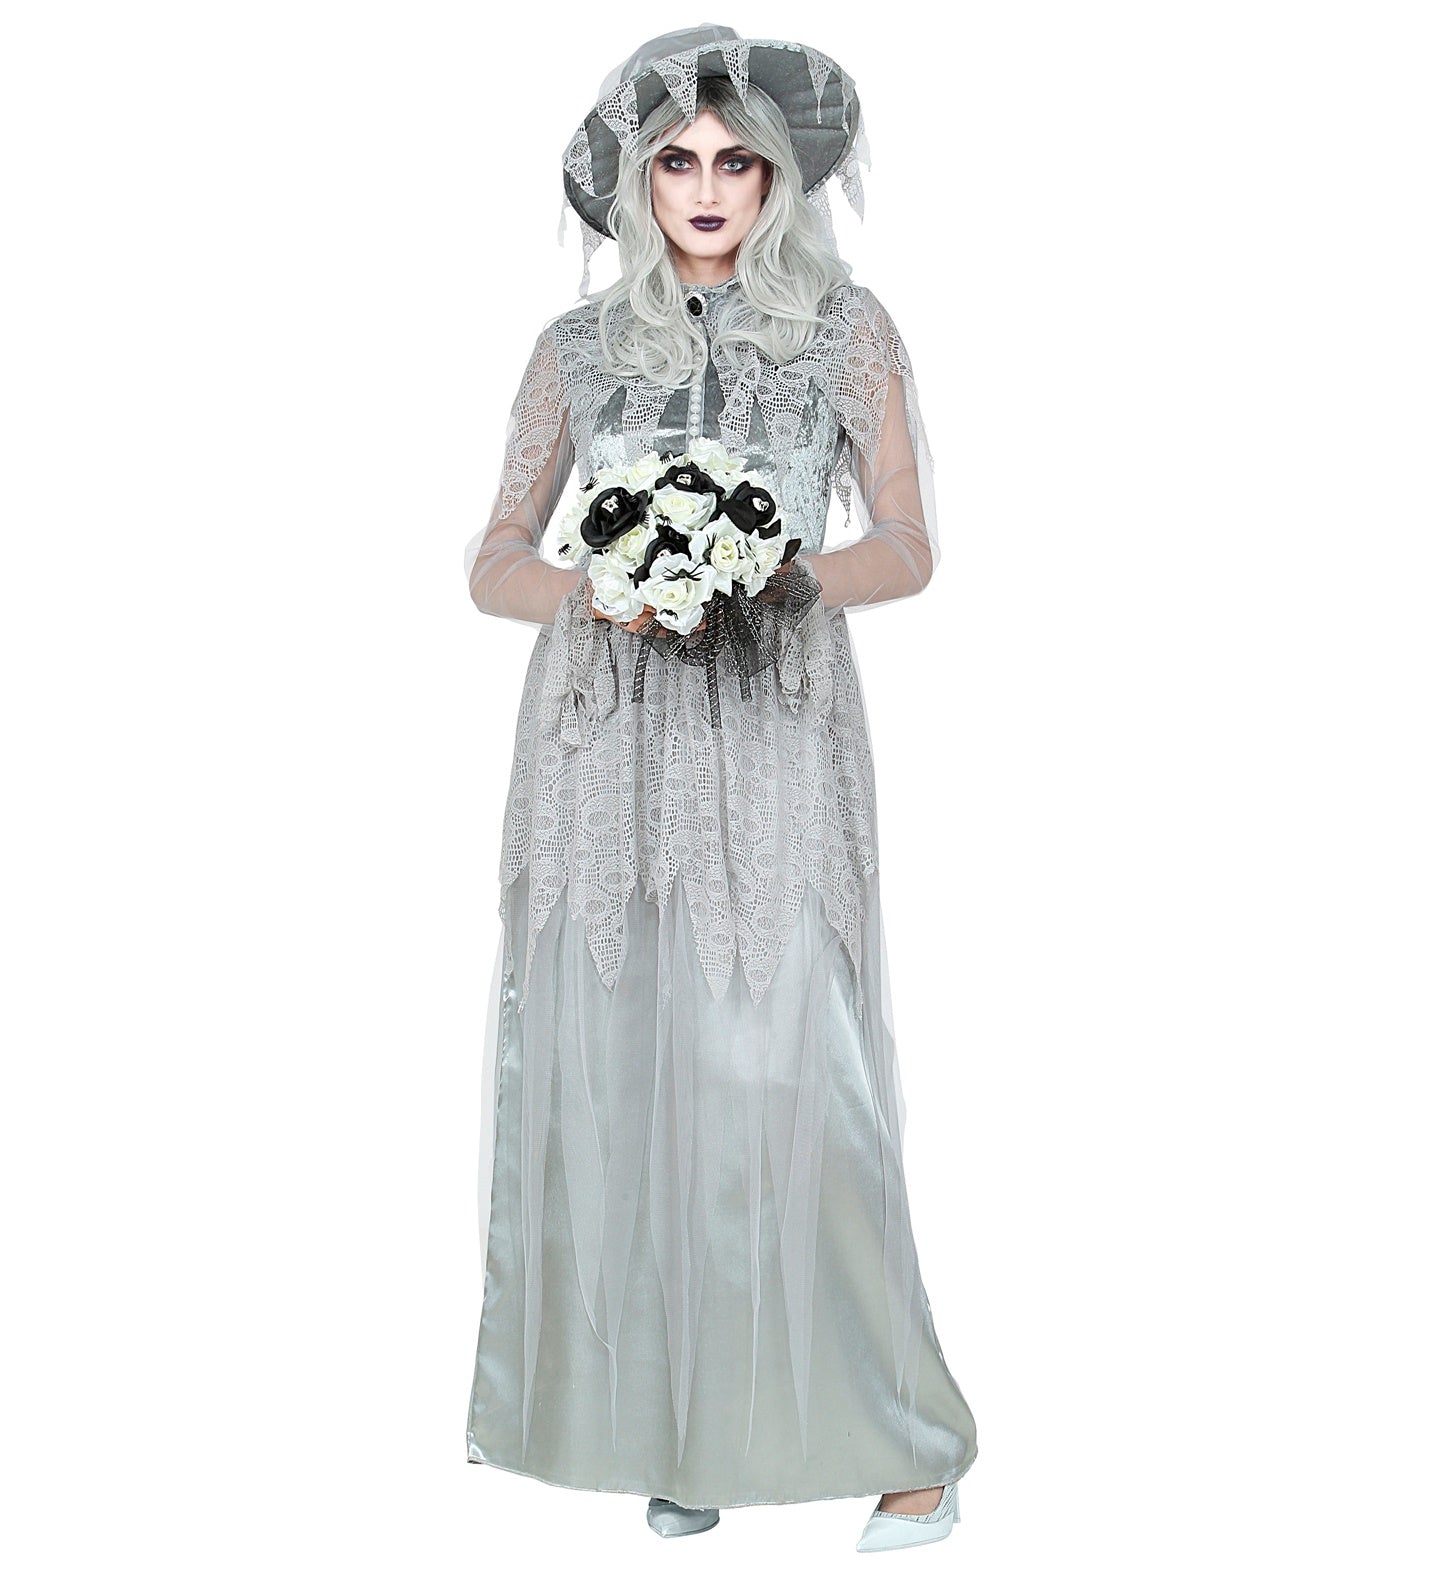 Ghostly Bride Ladies Halloween Costume